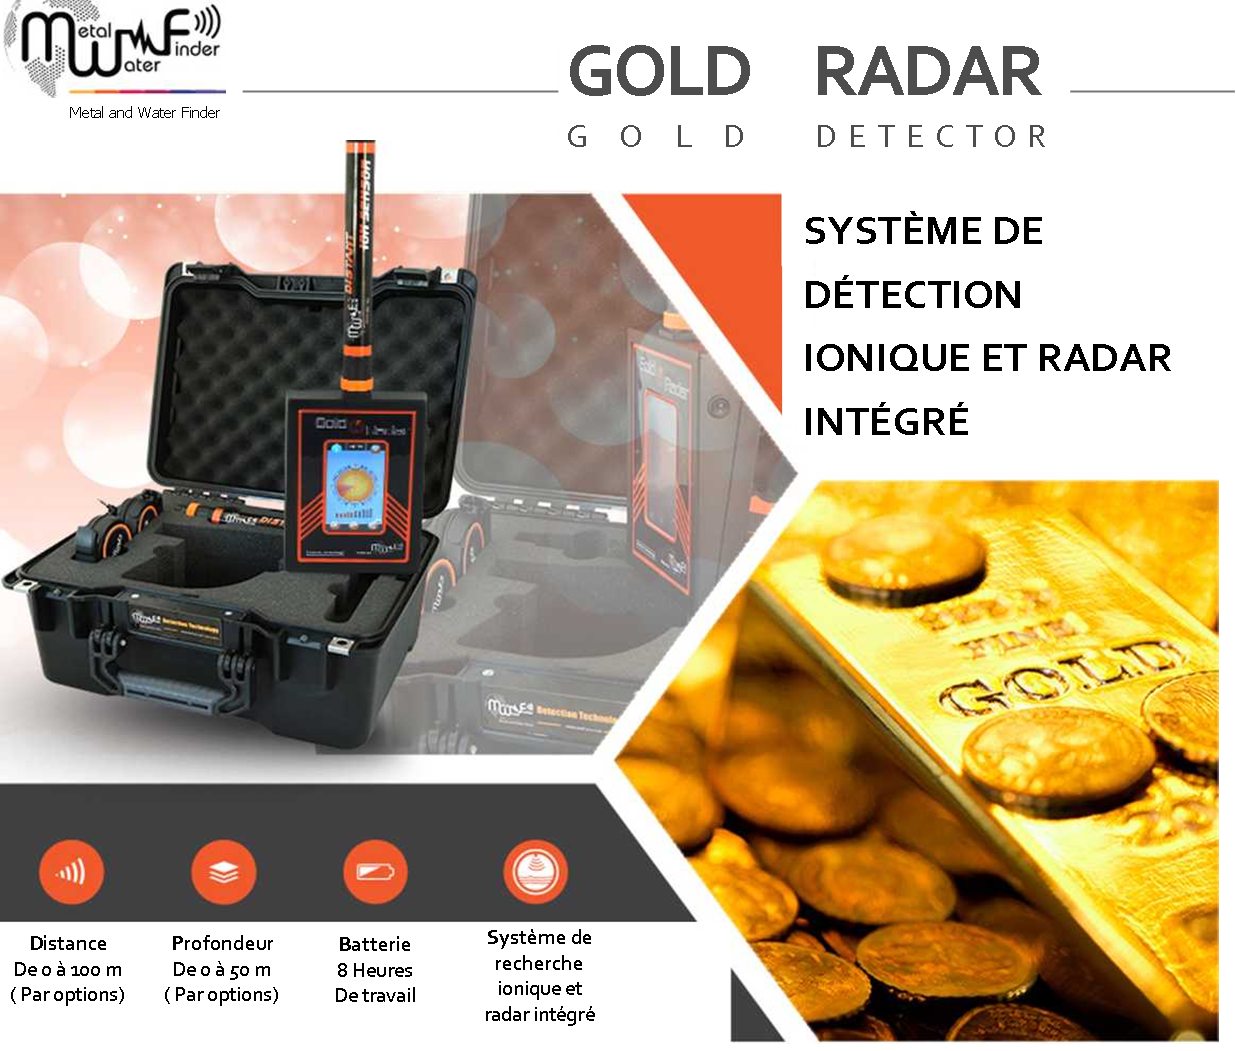 Gold Radar détecteur d'or MWF